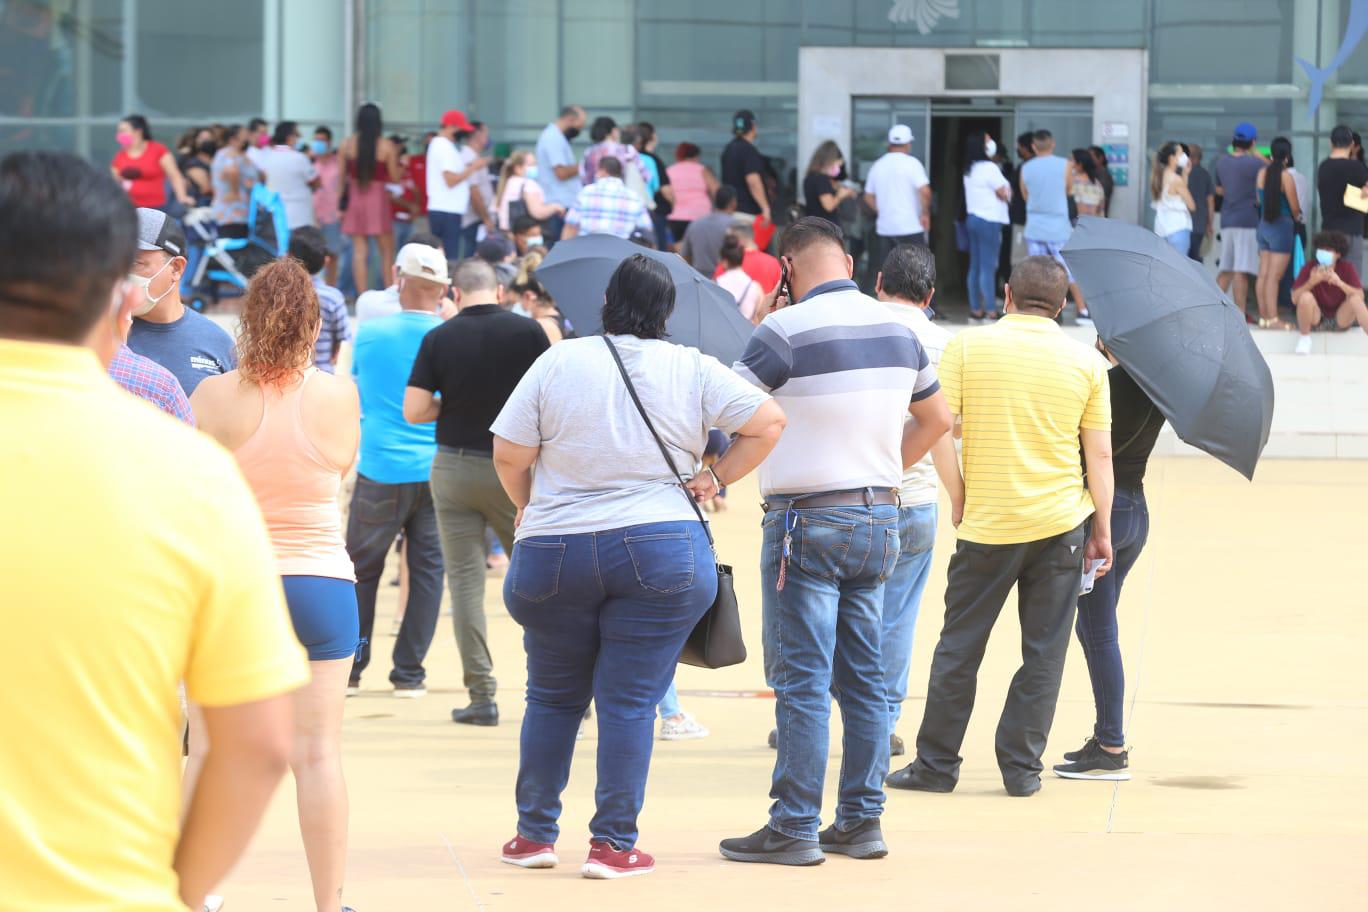 $!La vacunación contra el Covid en el Centro de Convenciones de Mazatlán se vuelve lenta, pues faltaron los vacunadores